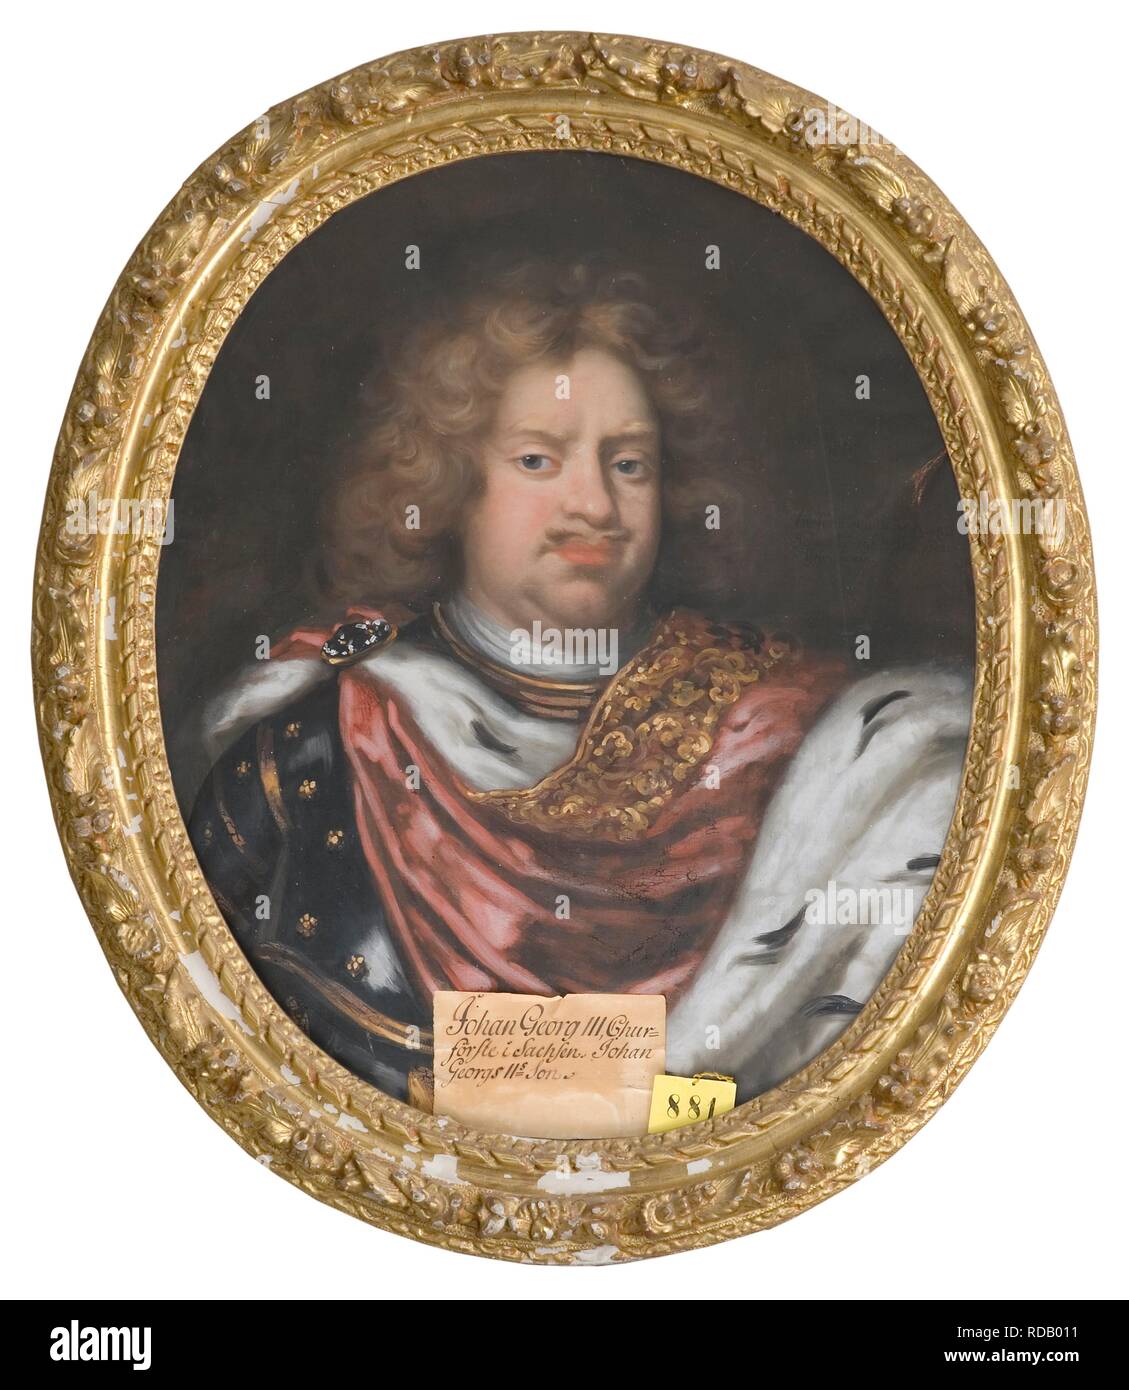 Ritratto di John George III (1647-1691), Elettore di Sassonia. Museo: Nationalmuseum di Stoccolma. Autore: Krafft, David von. Foto Stock